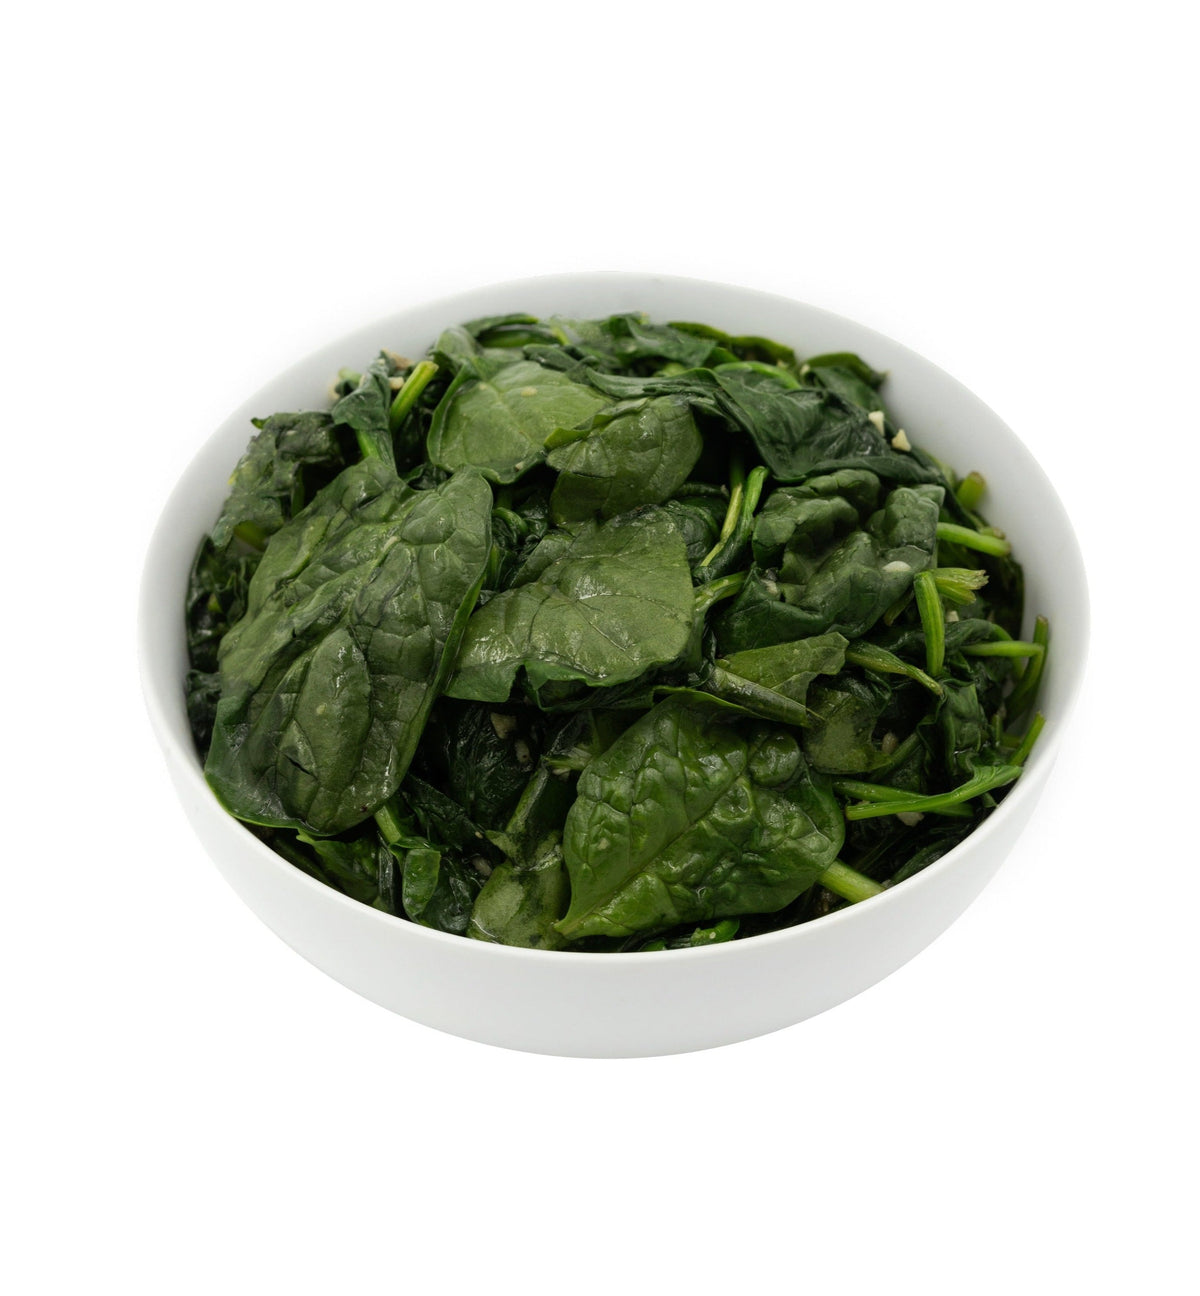 Sautéed Spinach